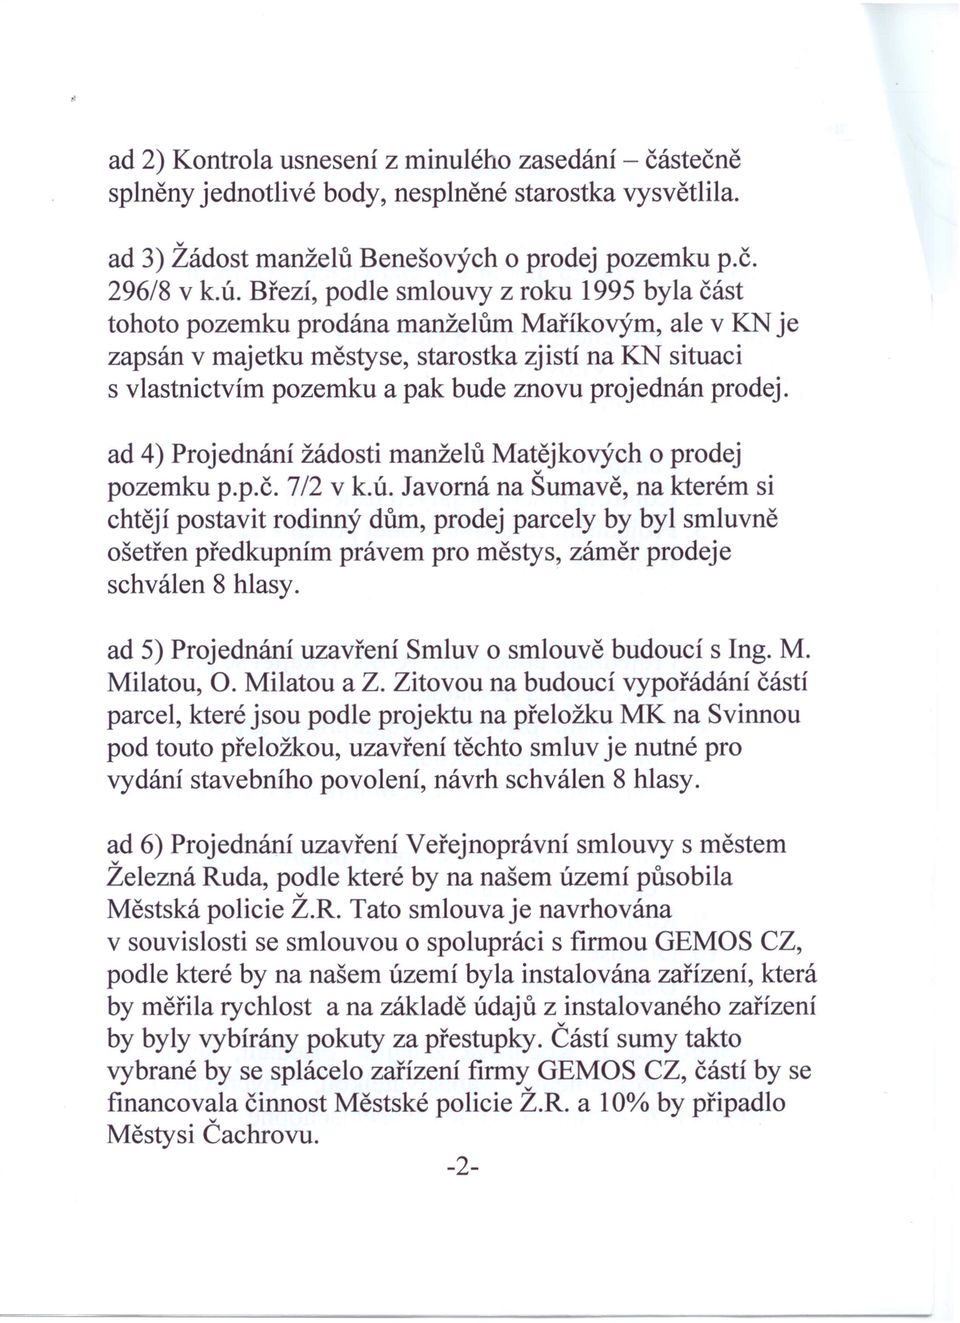 prodej. ad 4) Projednání žádosti manželů Matějkoých o prodej pozemku p.p.č. 7/2 k.ú.